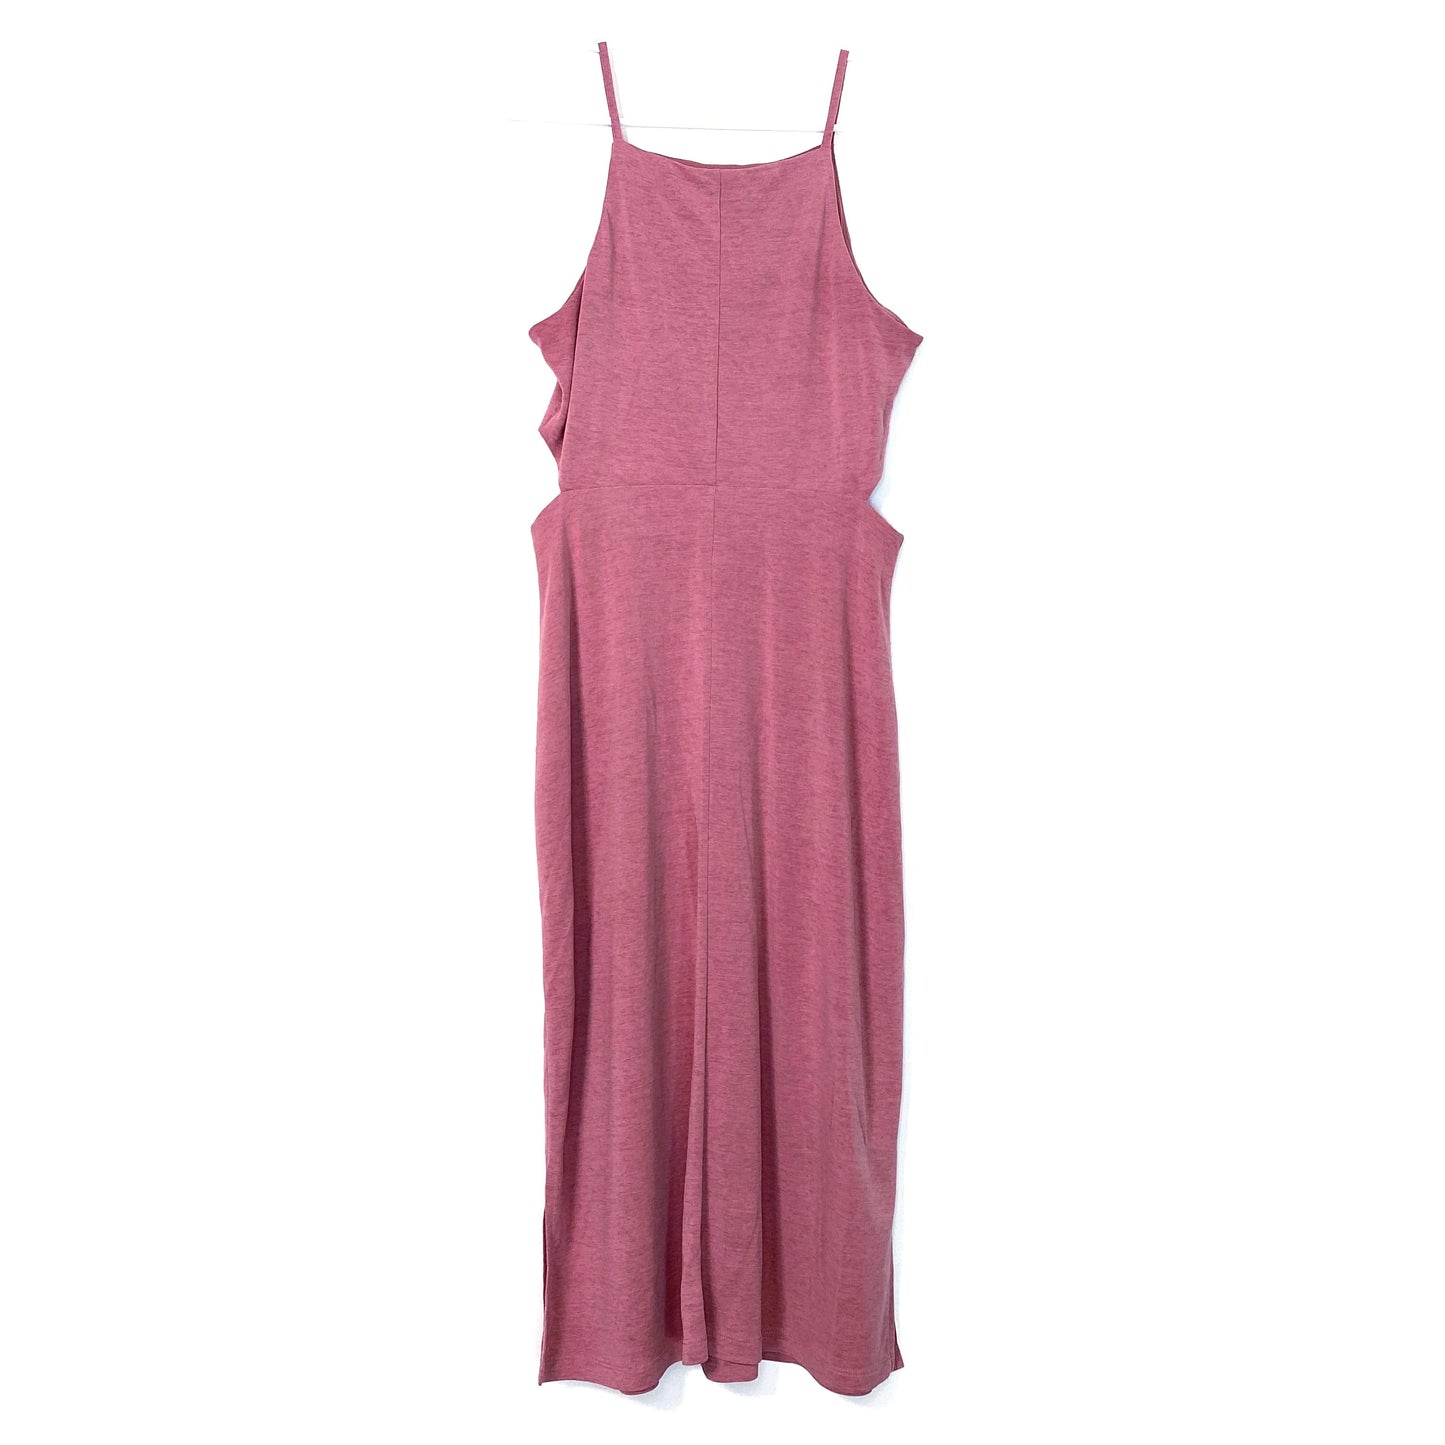 TOPSHOP Womens Size 6 Pink Bodycon Cutout Dress Spaghetti Straps